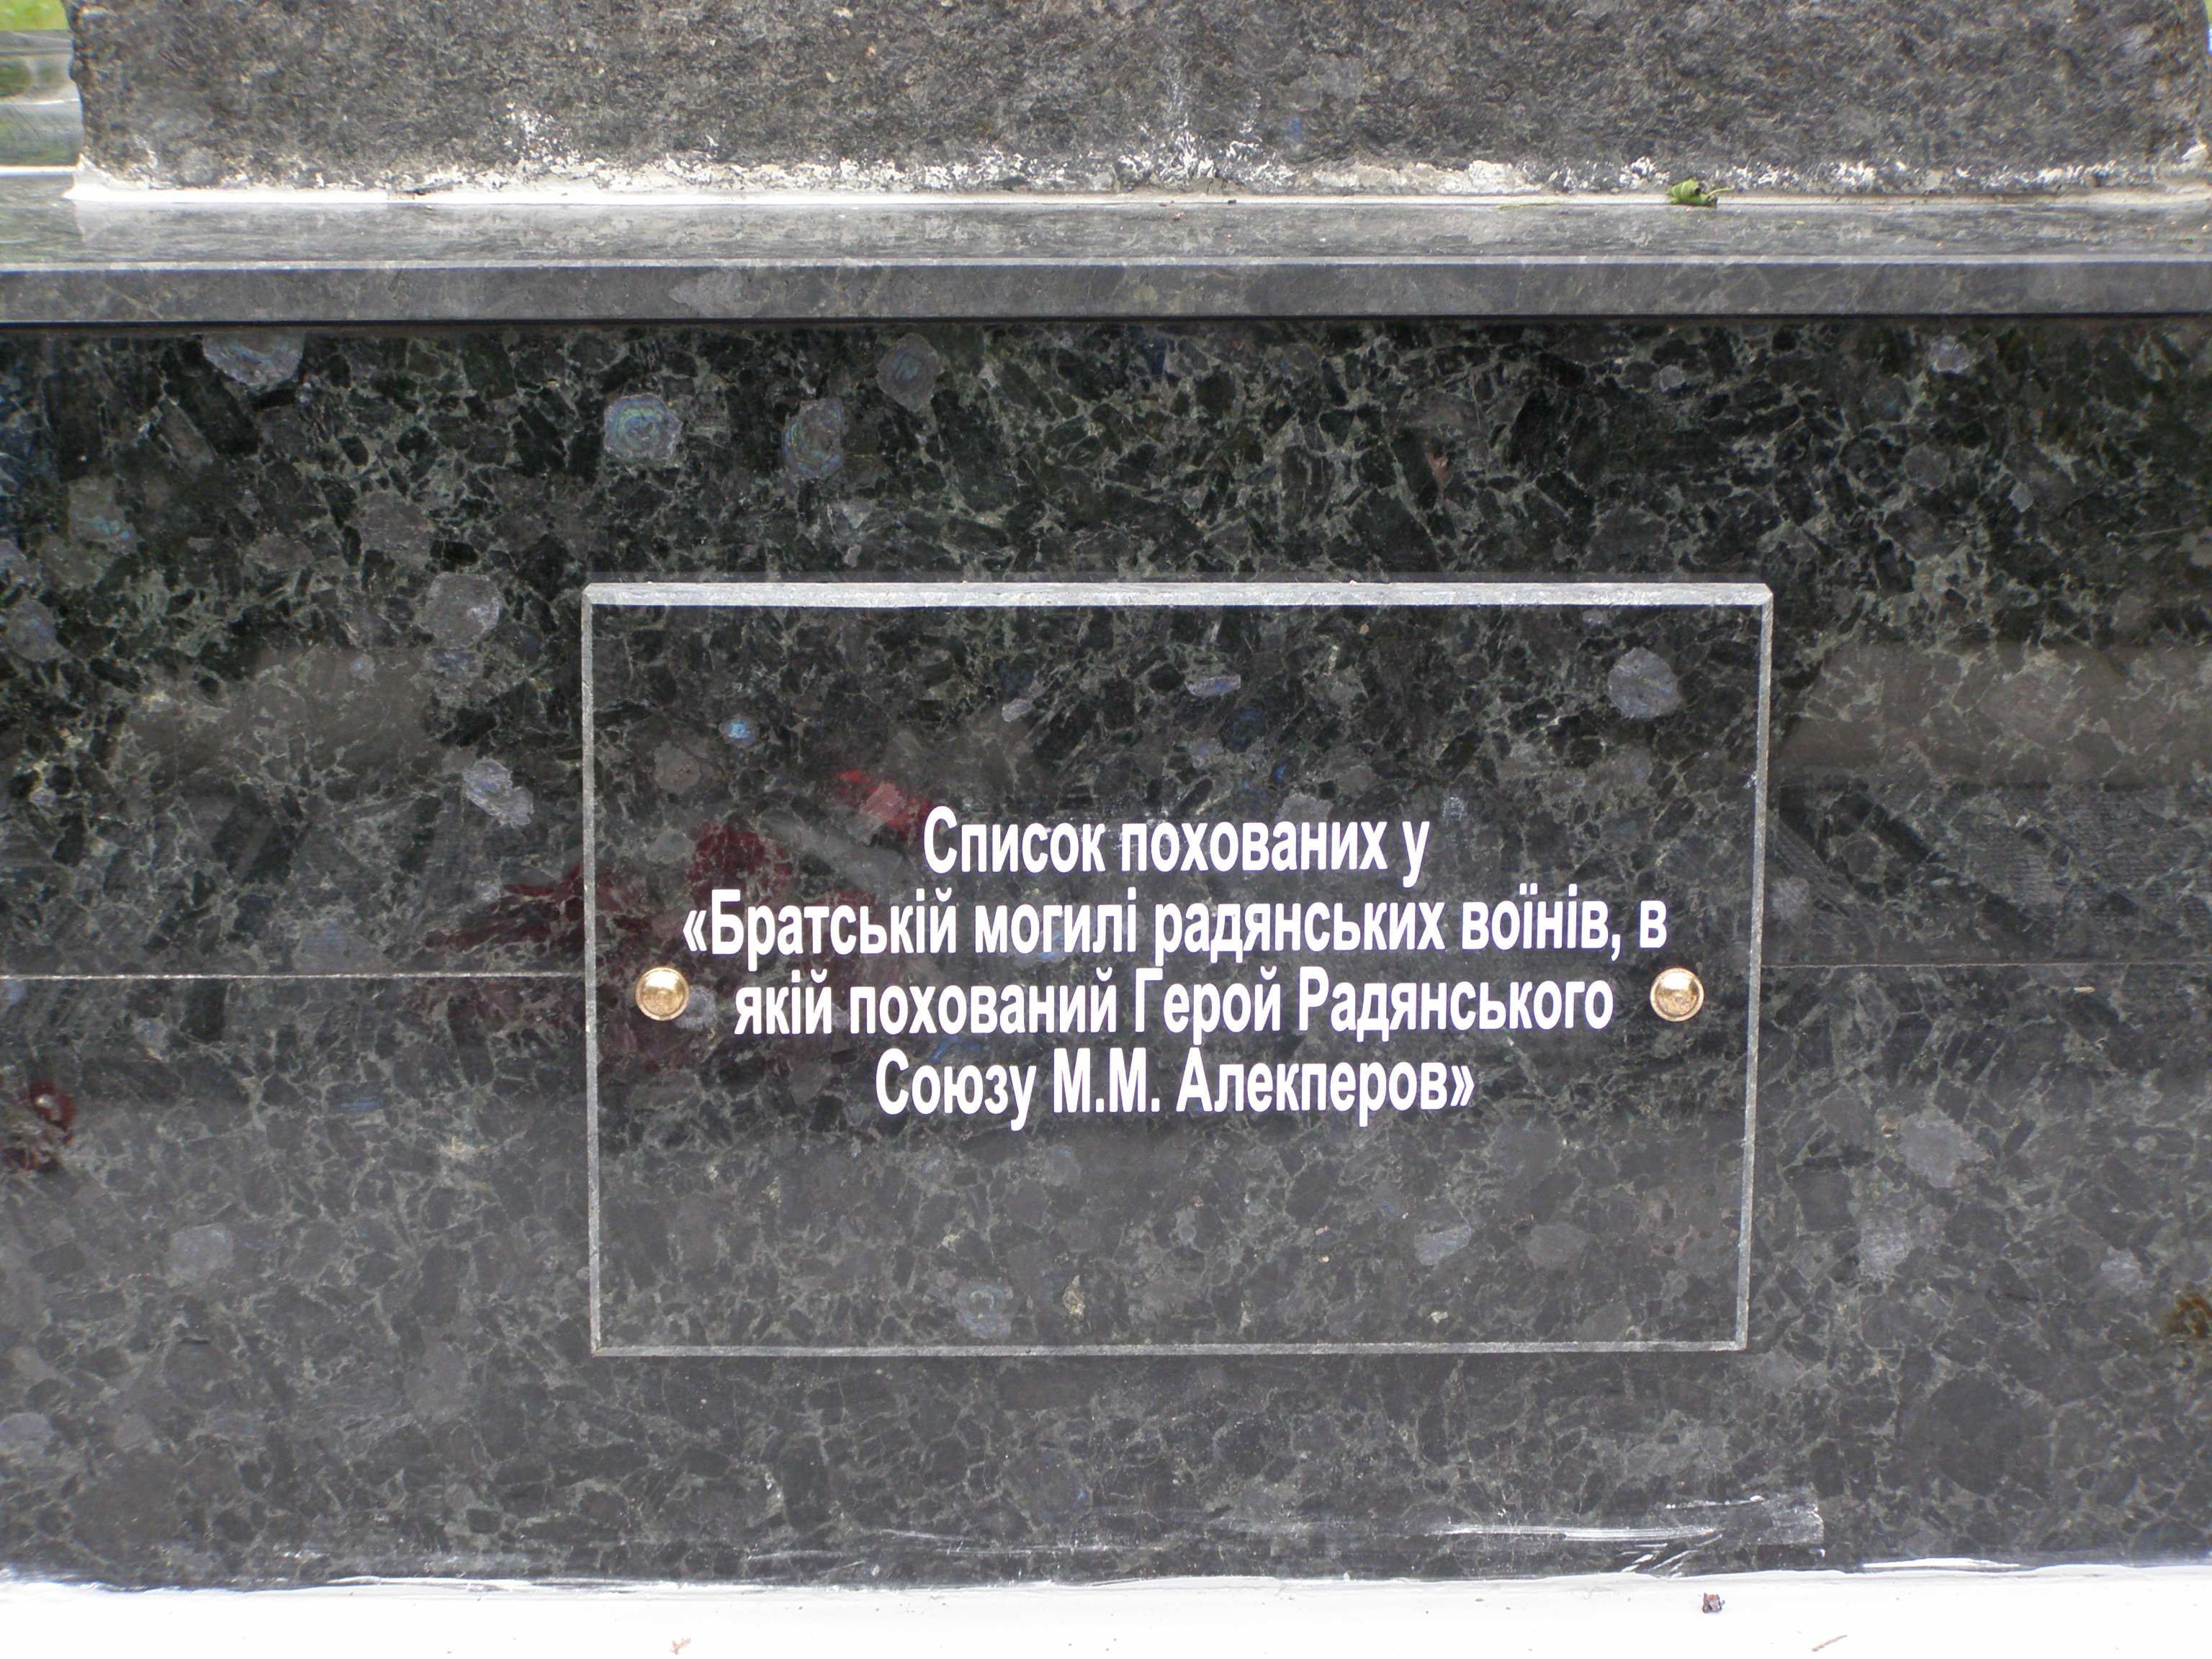 Братская могила в с. Рудка Царичанского района